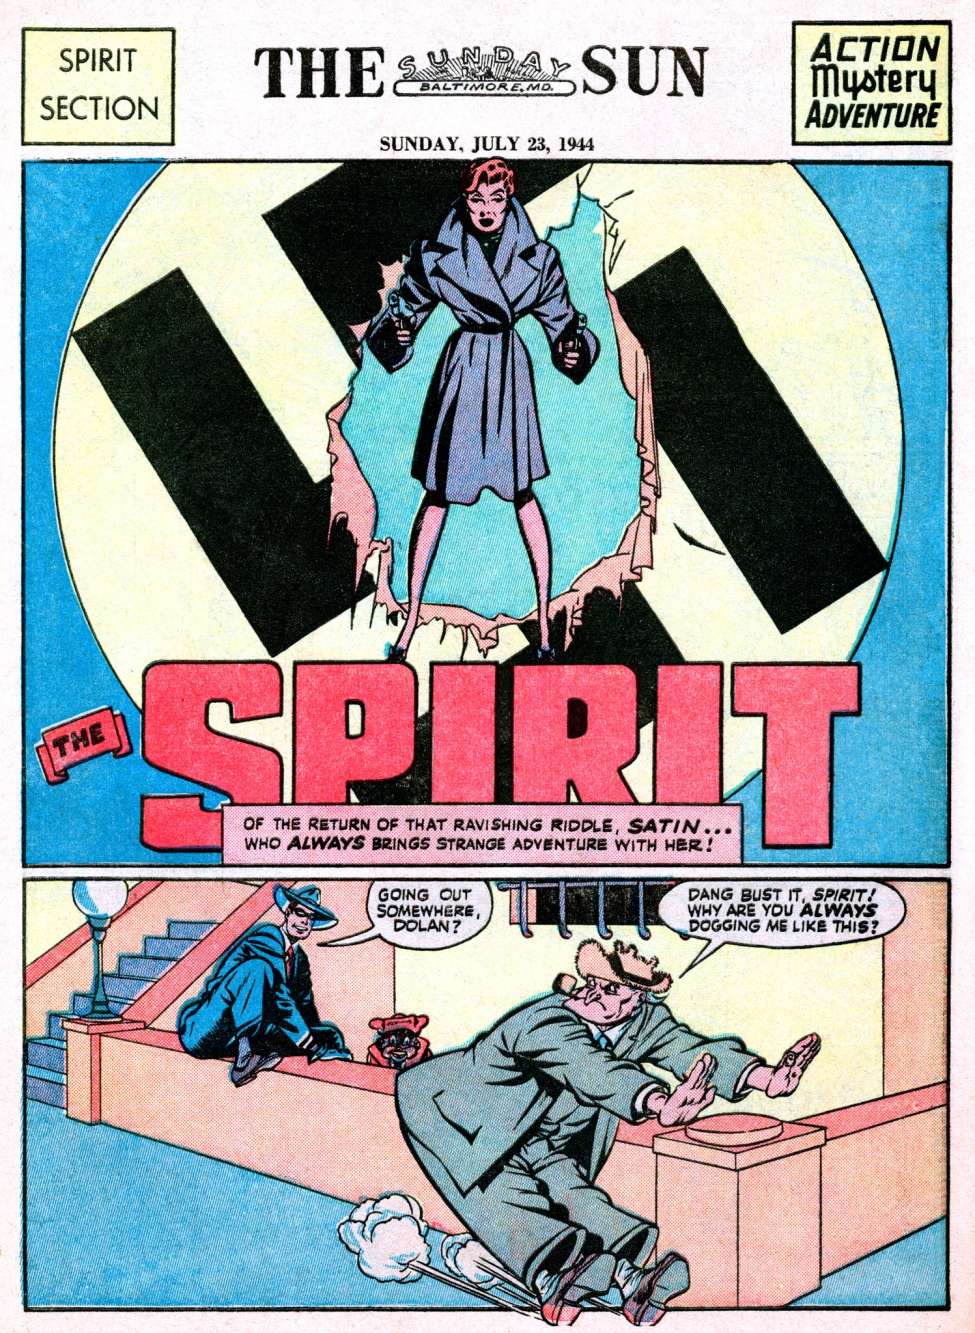 Book Cover For The Spirit (1944-07-23) - Baltimore Sun